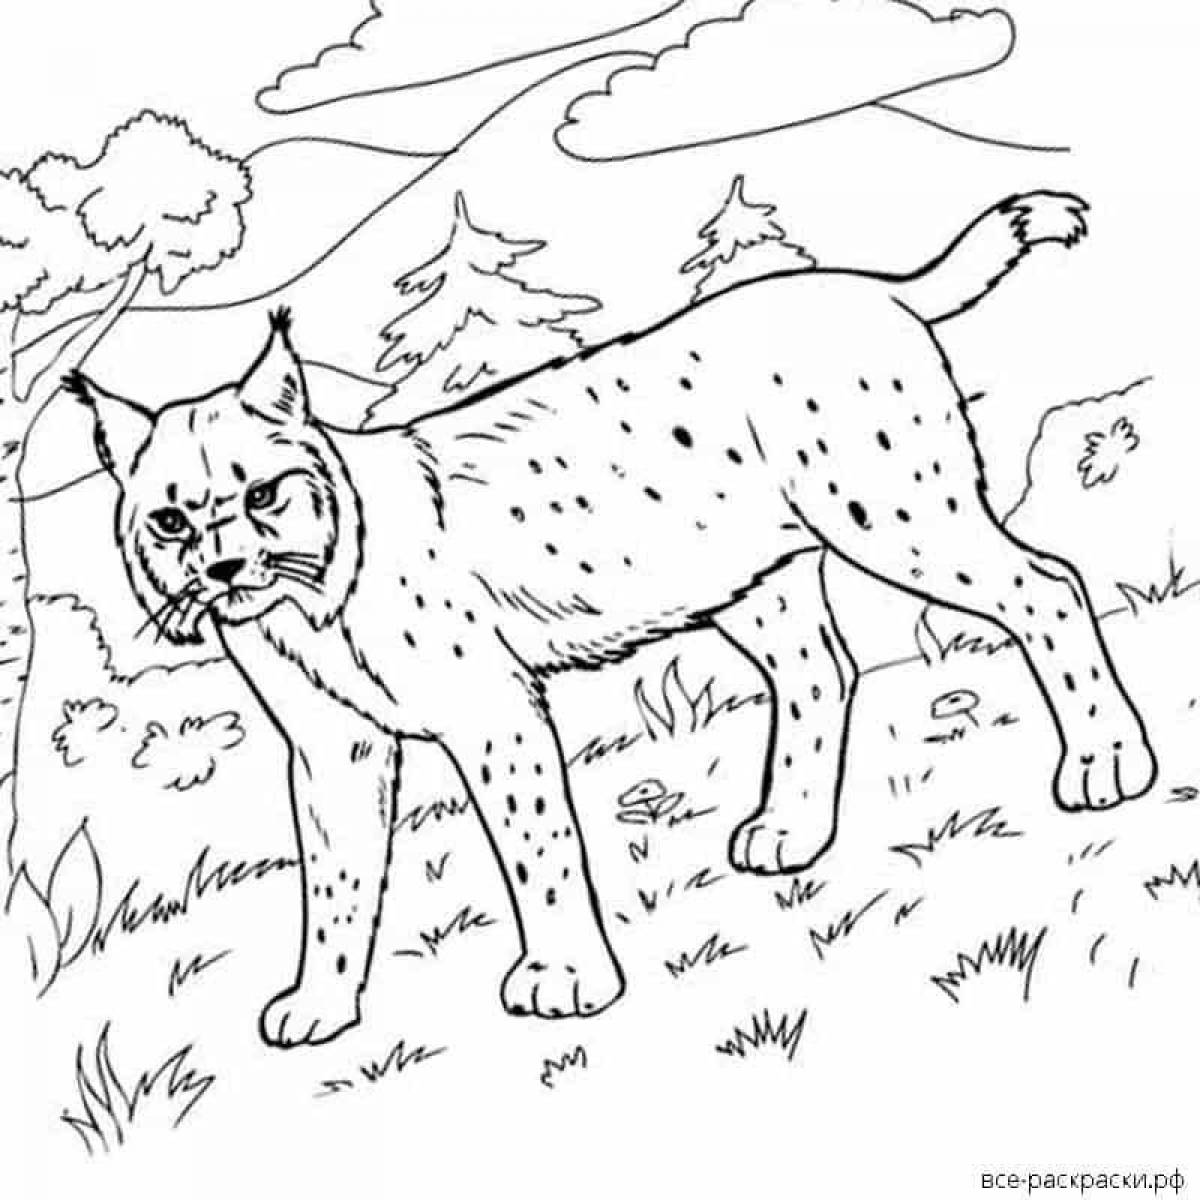 Увлекательная раскраска lynx для подростков